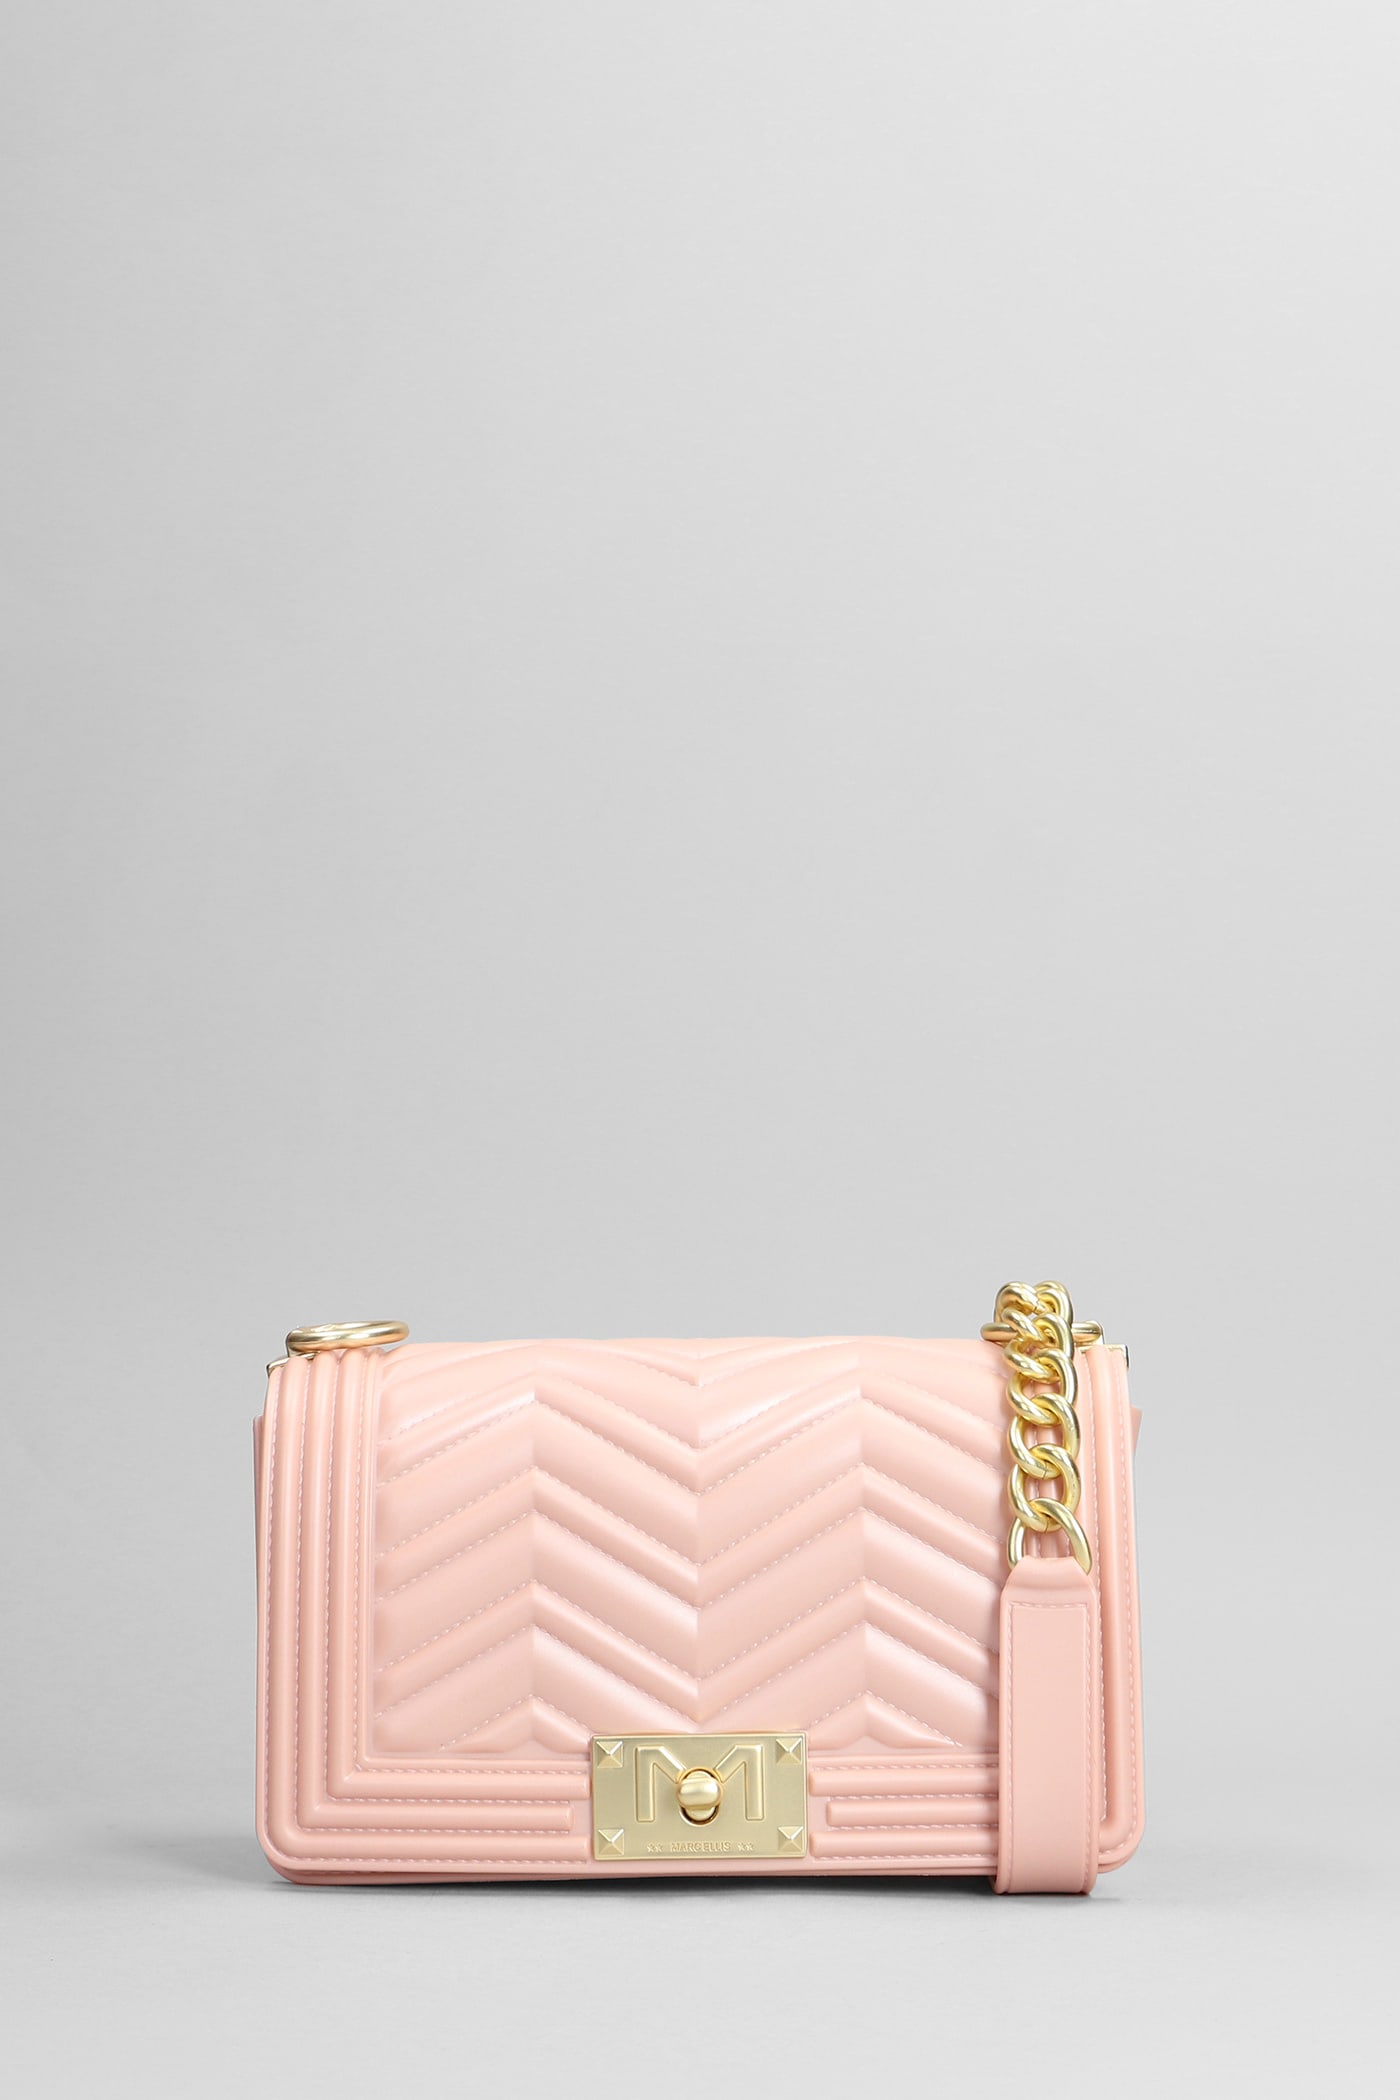 Marc Ellis Flat S Manhattan Shoulder Bag In Rose-pink Pvc